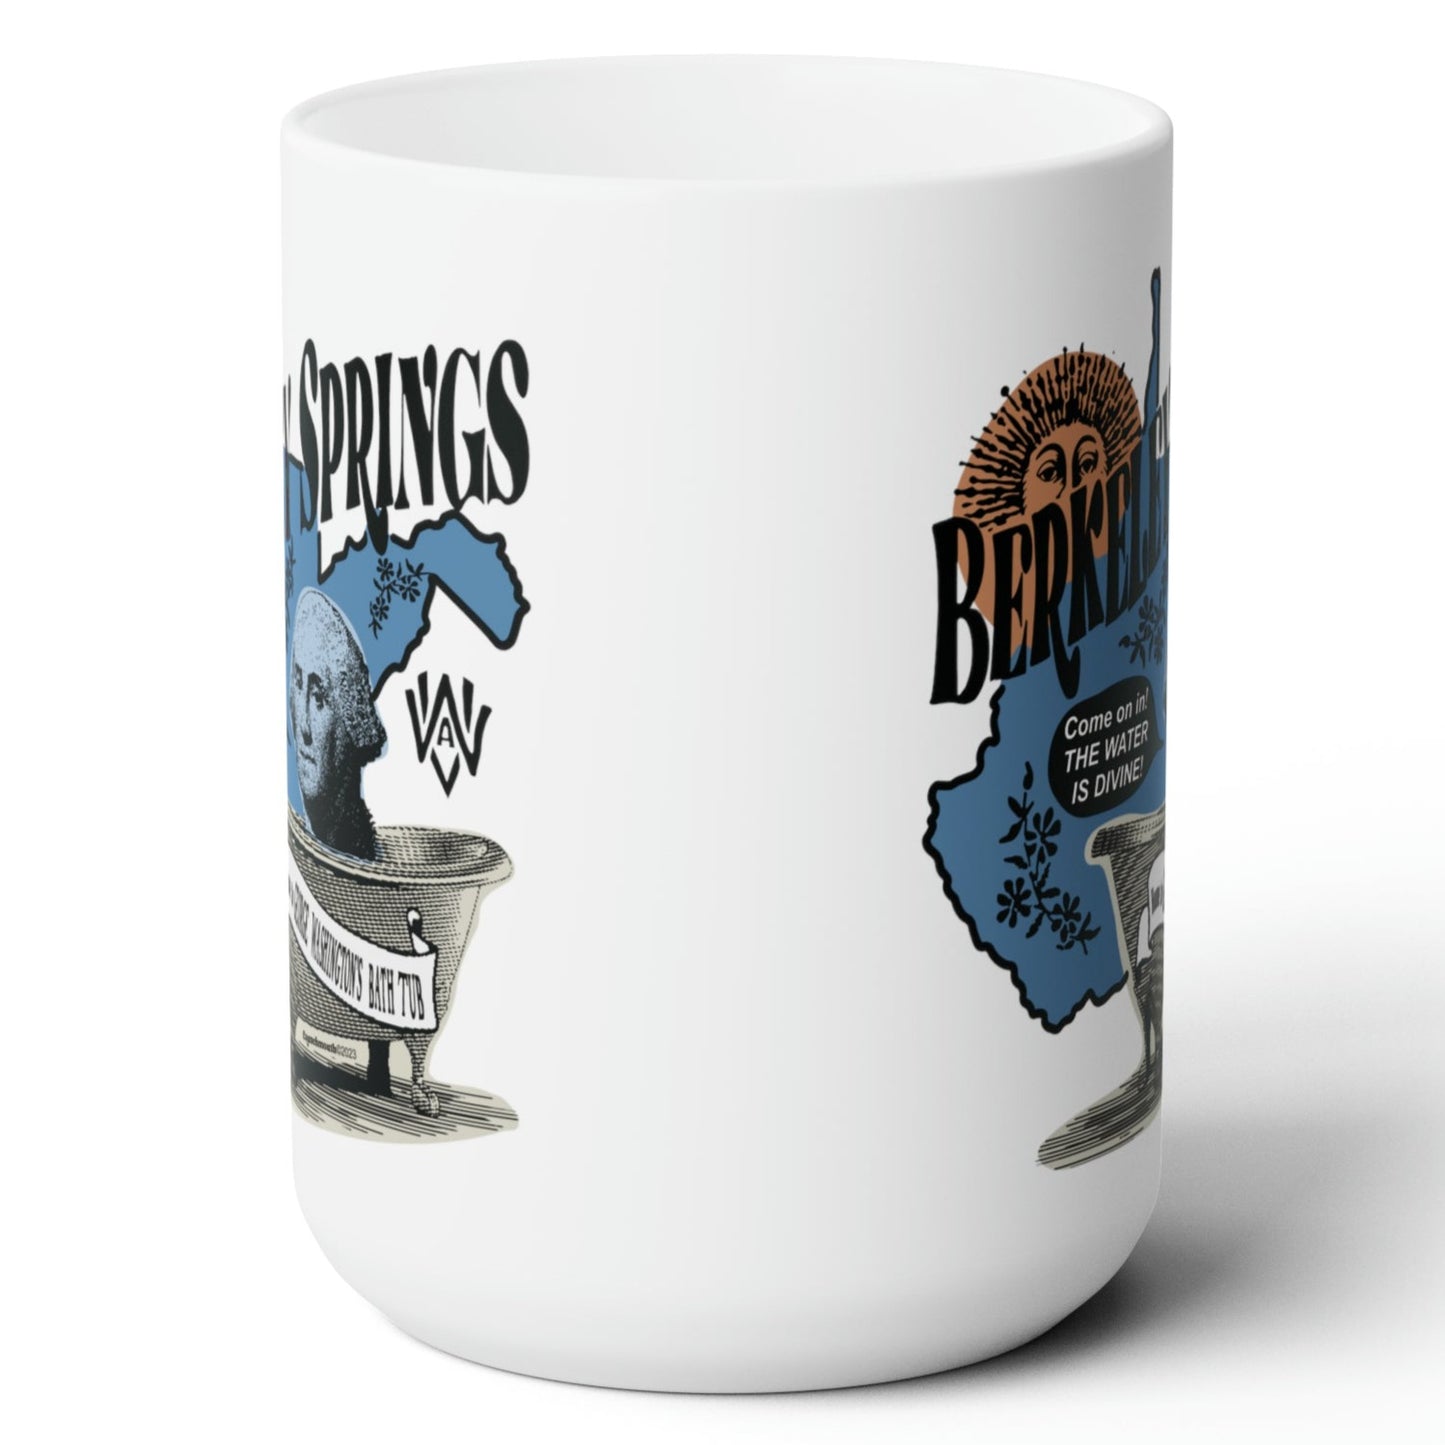 berkeley springs wv white ceramic coffee mug view 2